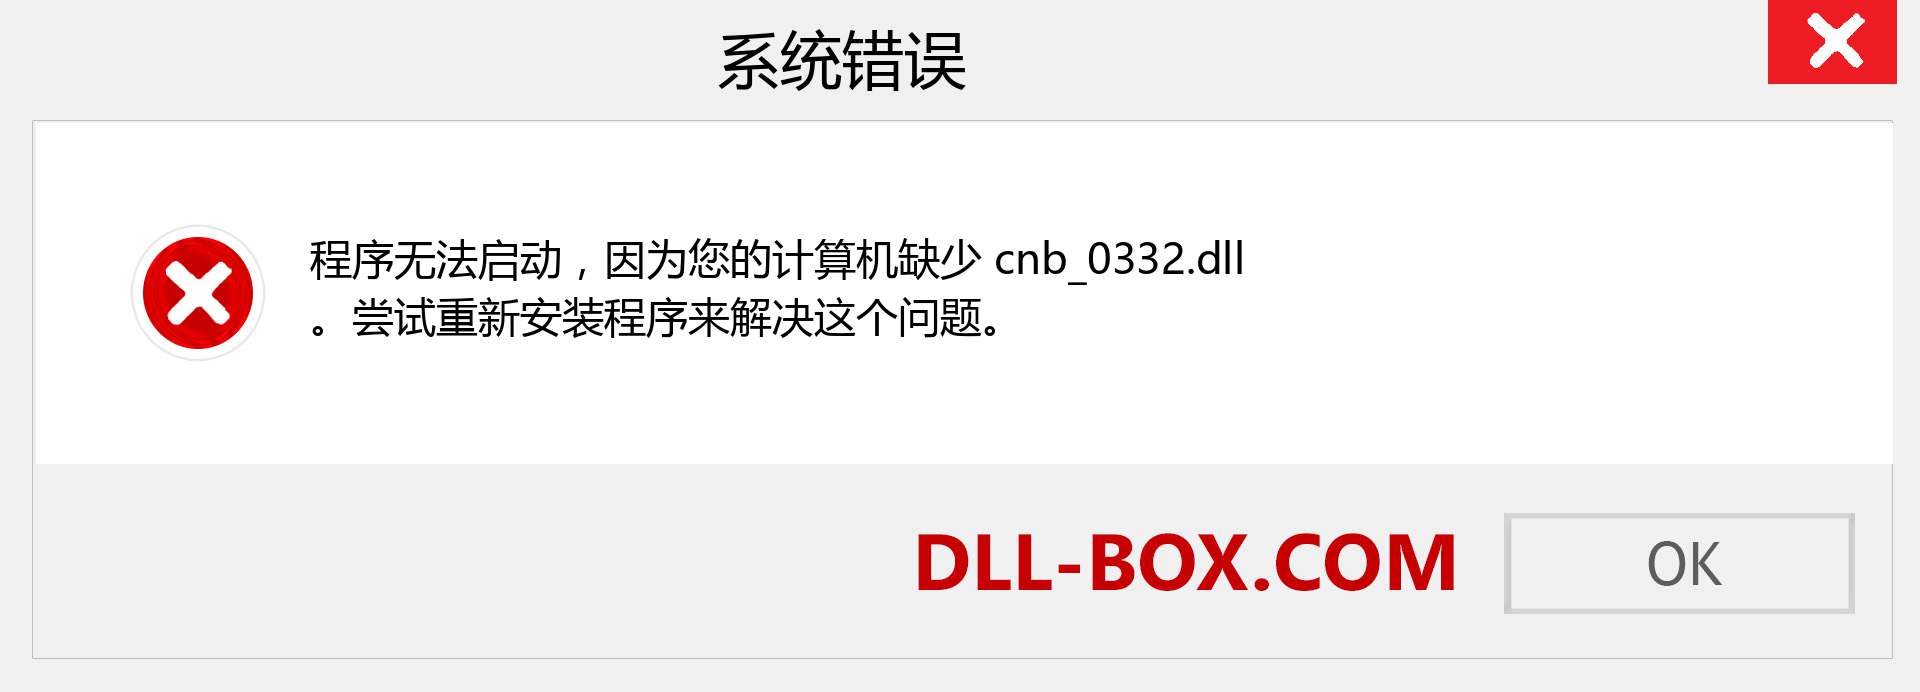 cnb_0332.dll 文件丢失？。 适用于 Windows 7、8、10 的下载 - 修复 Windows、照片、图像上的 cnb_0332 dll 丢失错误